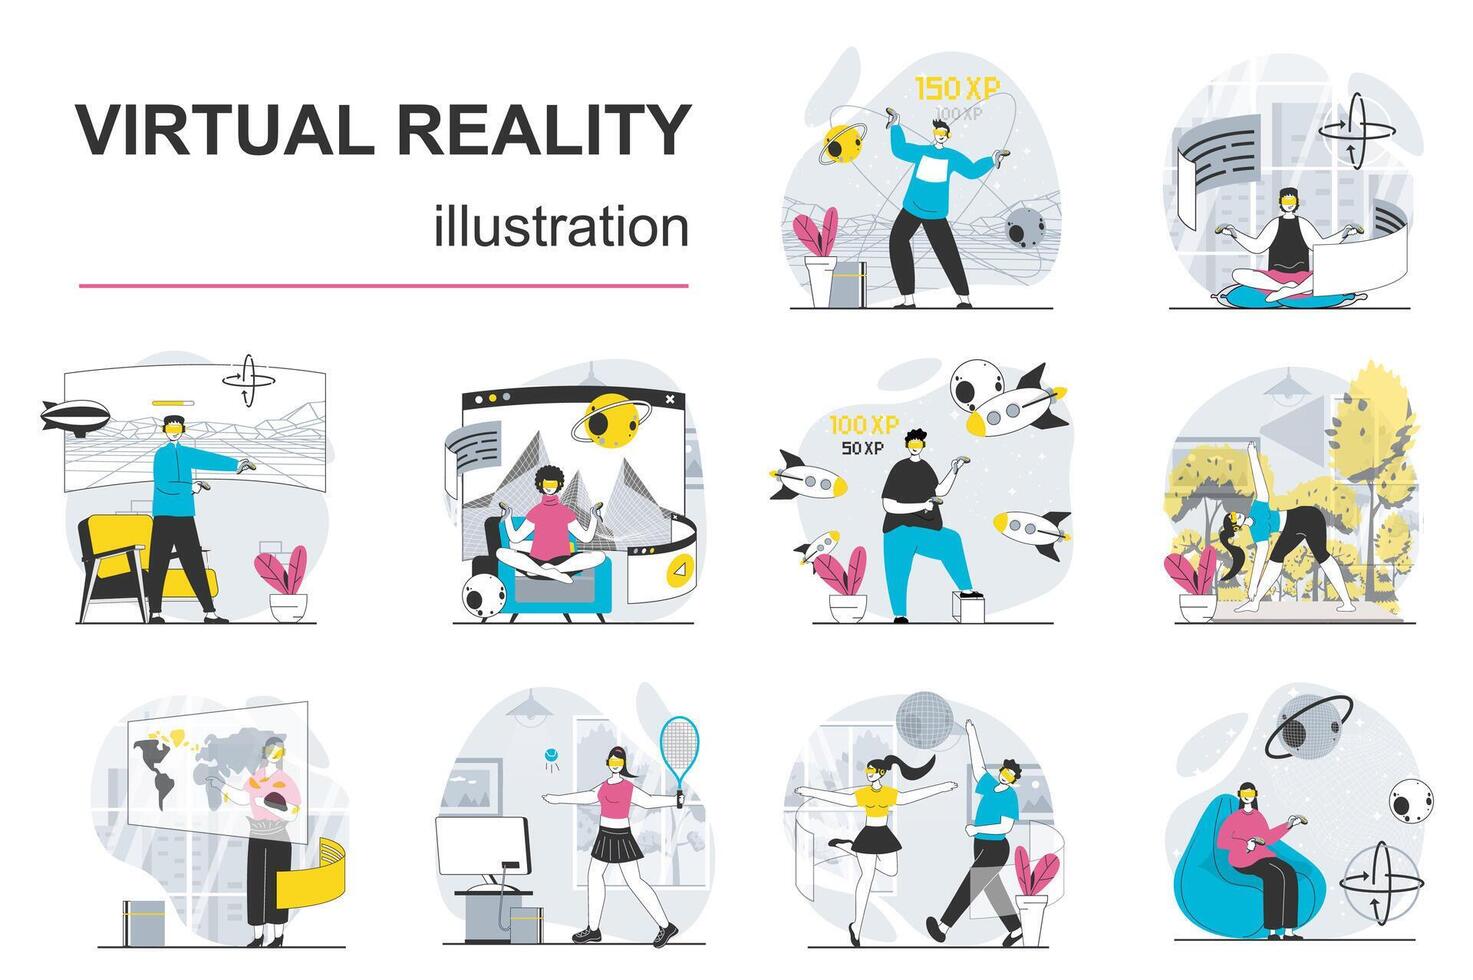 virtuell verklighet begrepp med karaktär situationer mega uppsättning. bunt av scener människor i vr headsetet arbetssätt, Träning, framställning forskning, inlärning i cyberrymden. vektor illustrationer i platt webb design